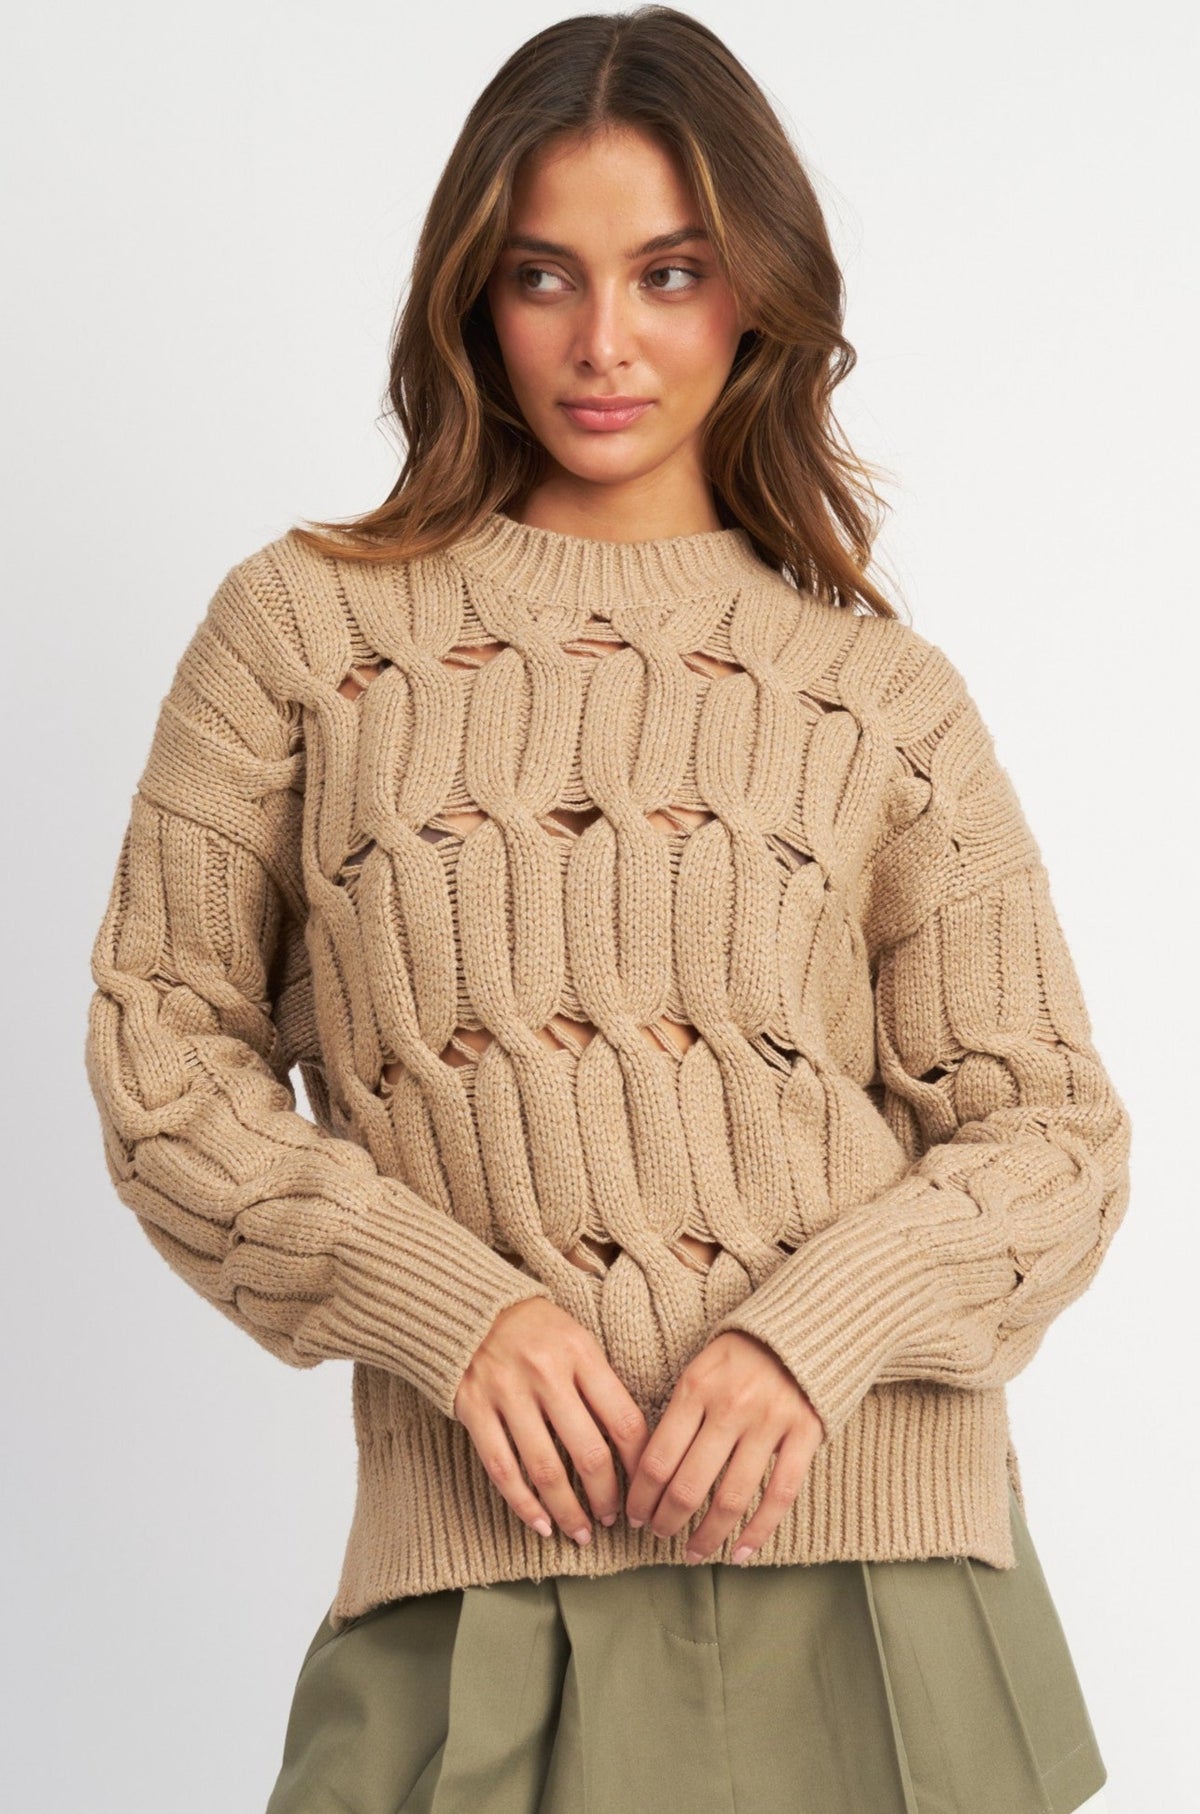 Mavis Sweater